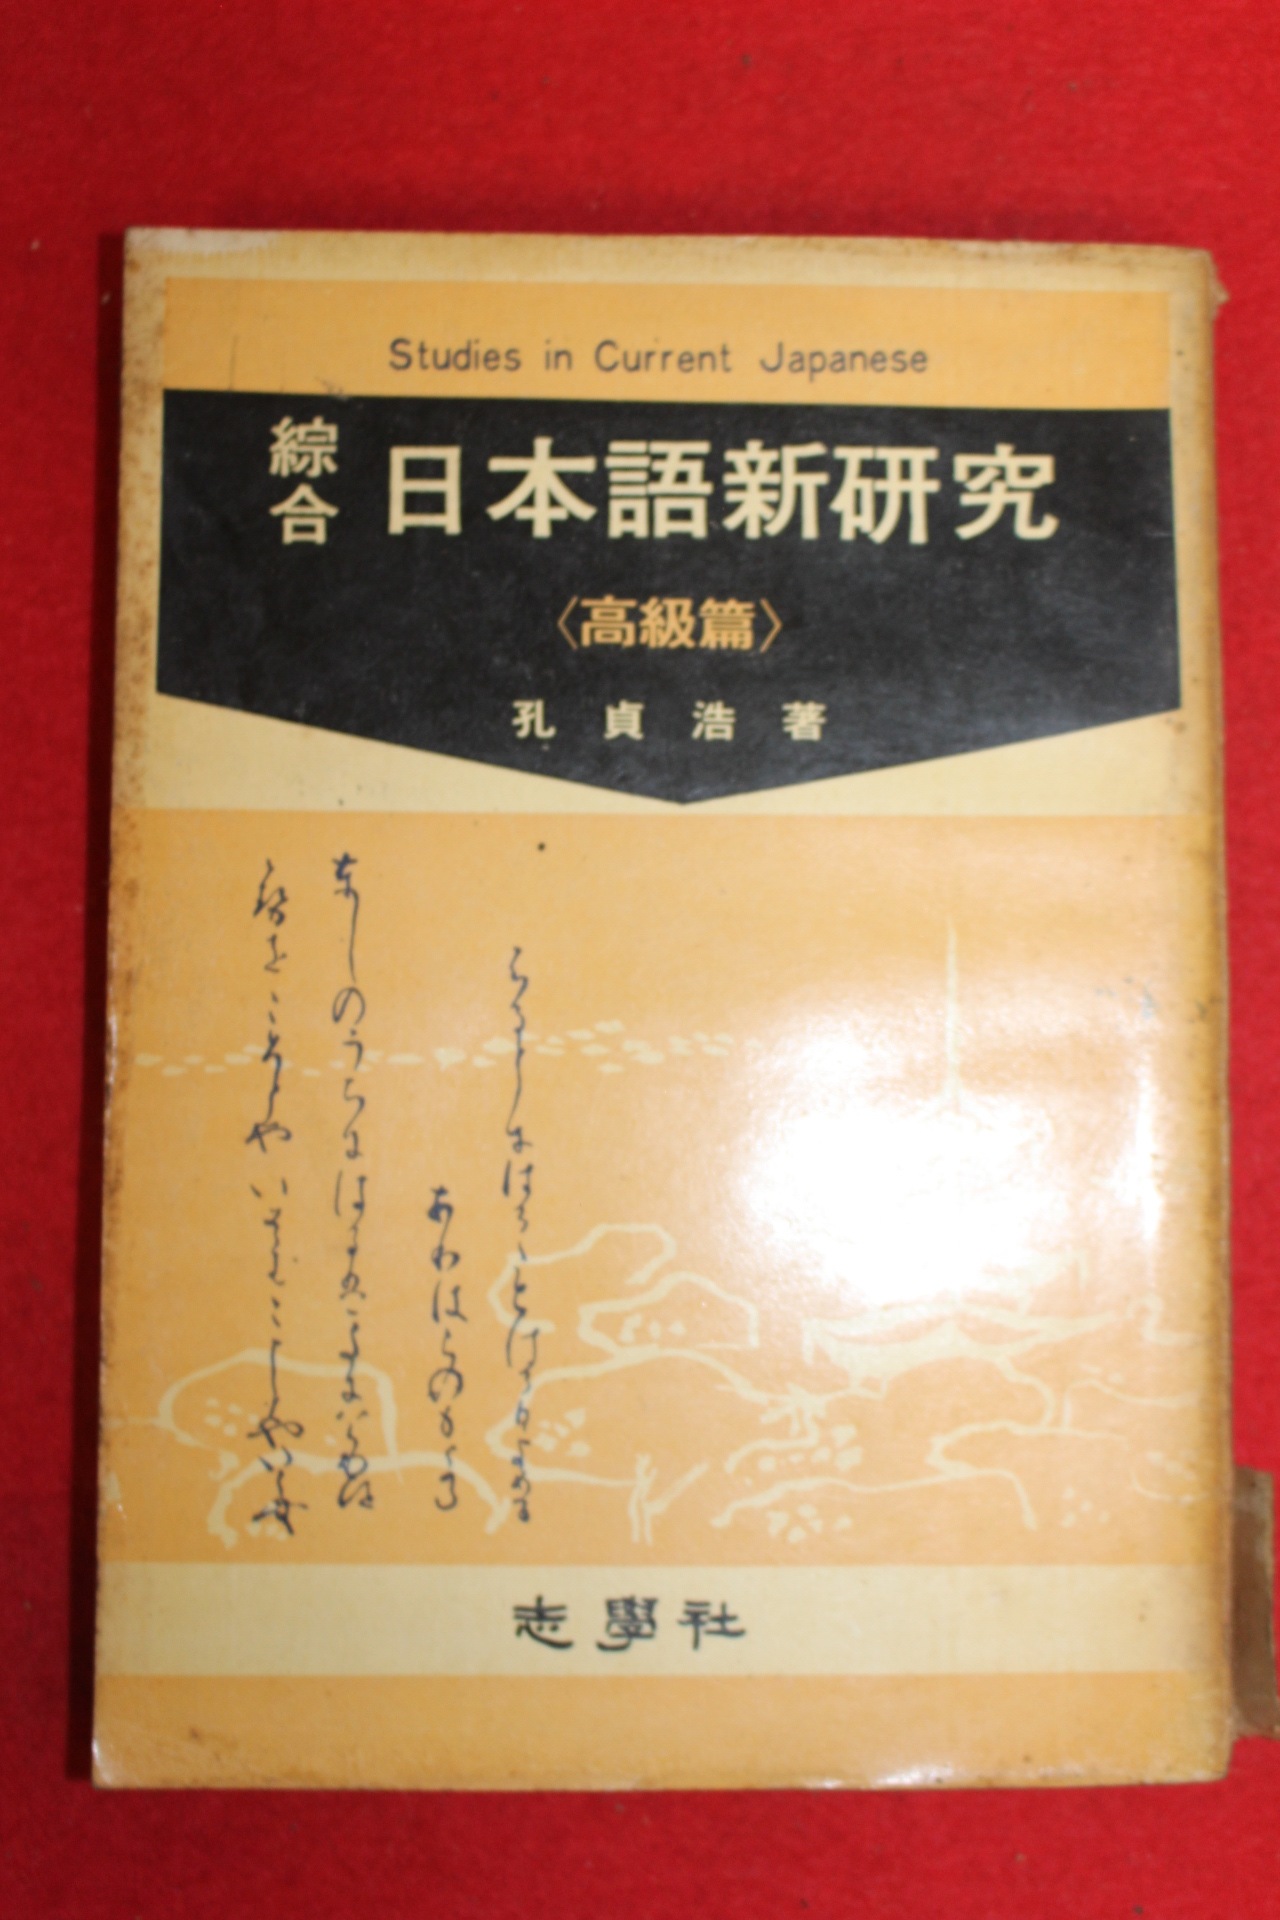 1970년 공정호 지학사 표준일본어신연구 고급편